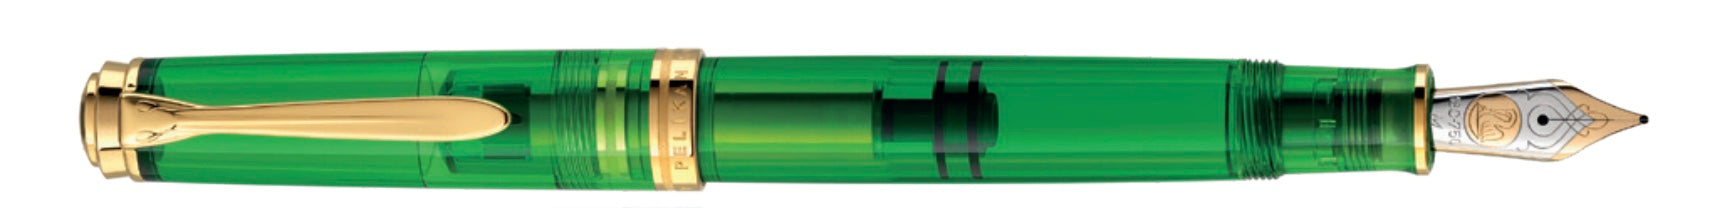 Pelikan Souverän® 800 Green Demonstrator Special Edition Fountain Pen - Blesket Canada